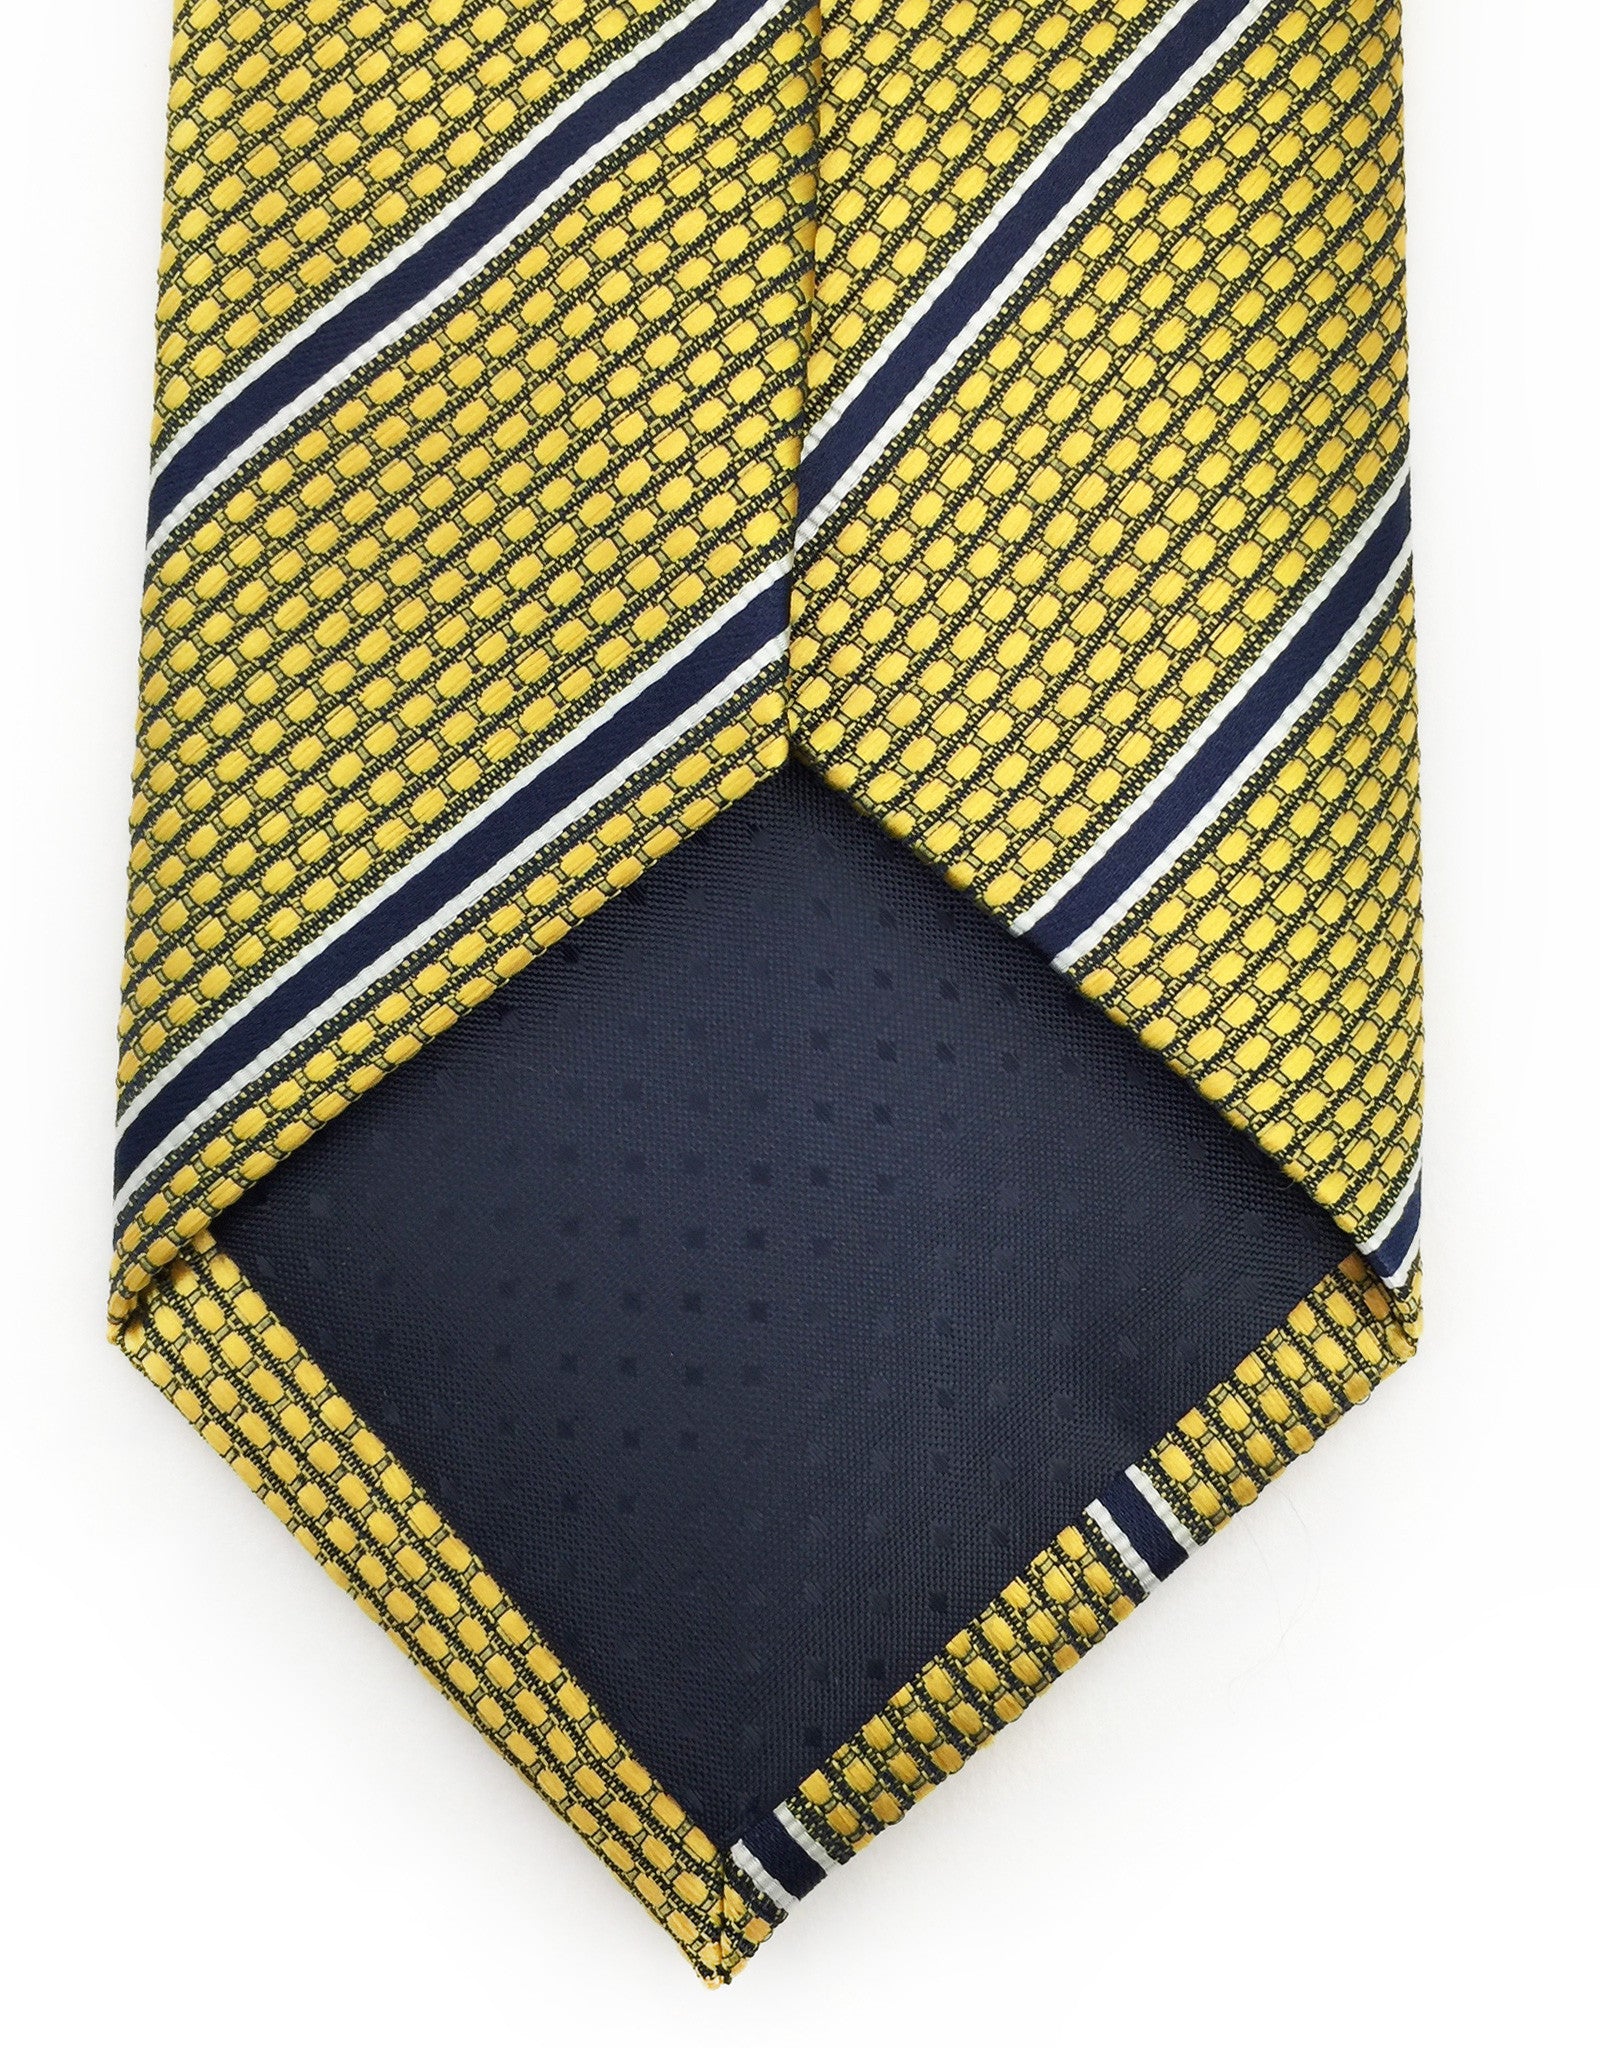 Gold and Navy Striped Tie – GentlemanJoe